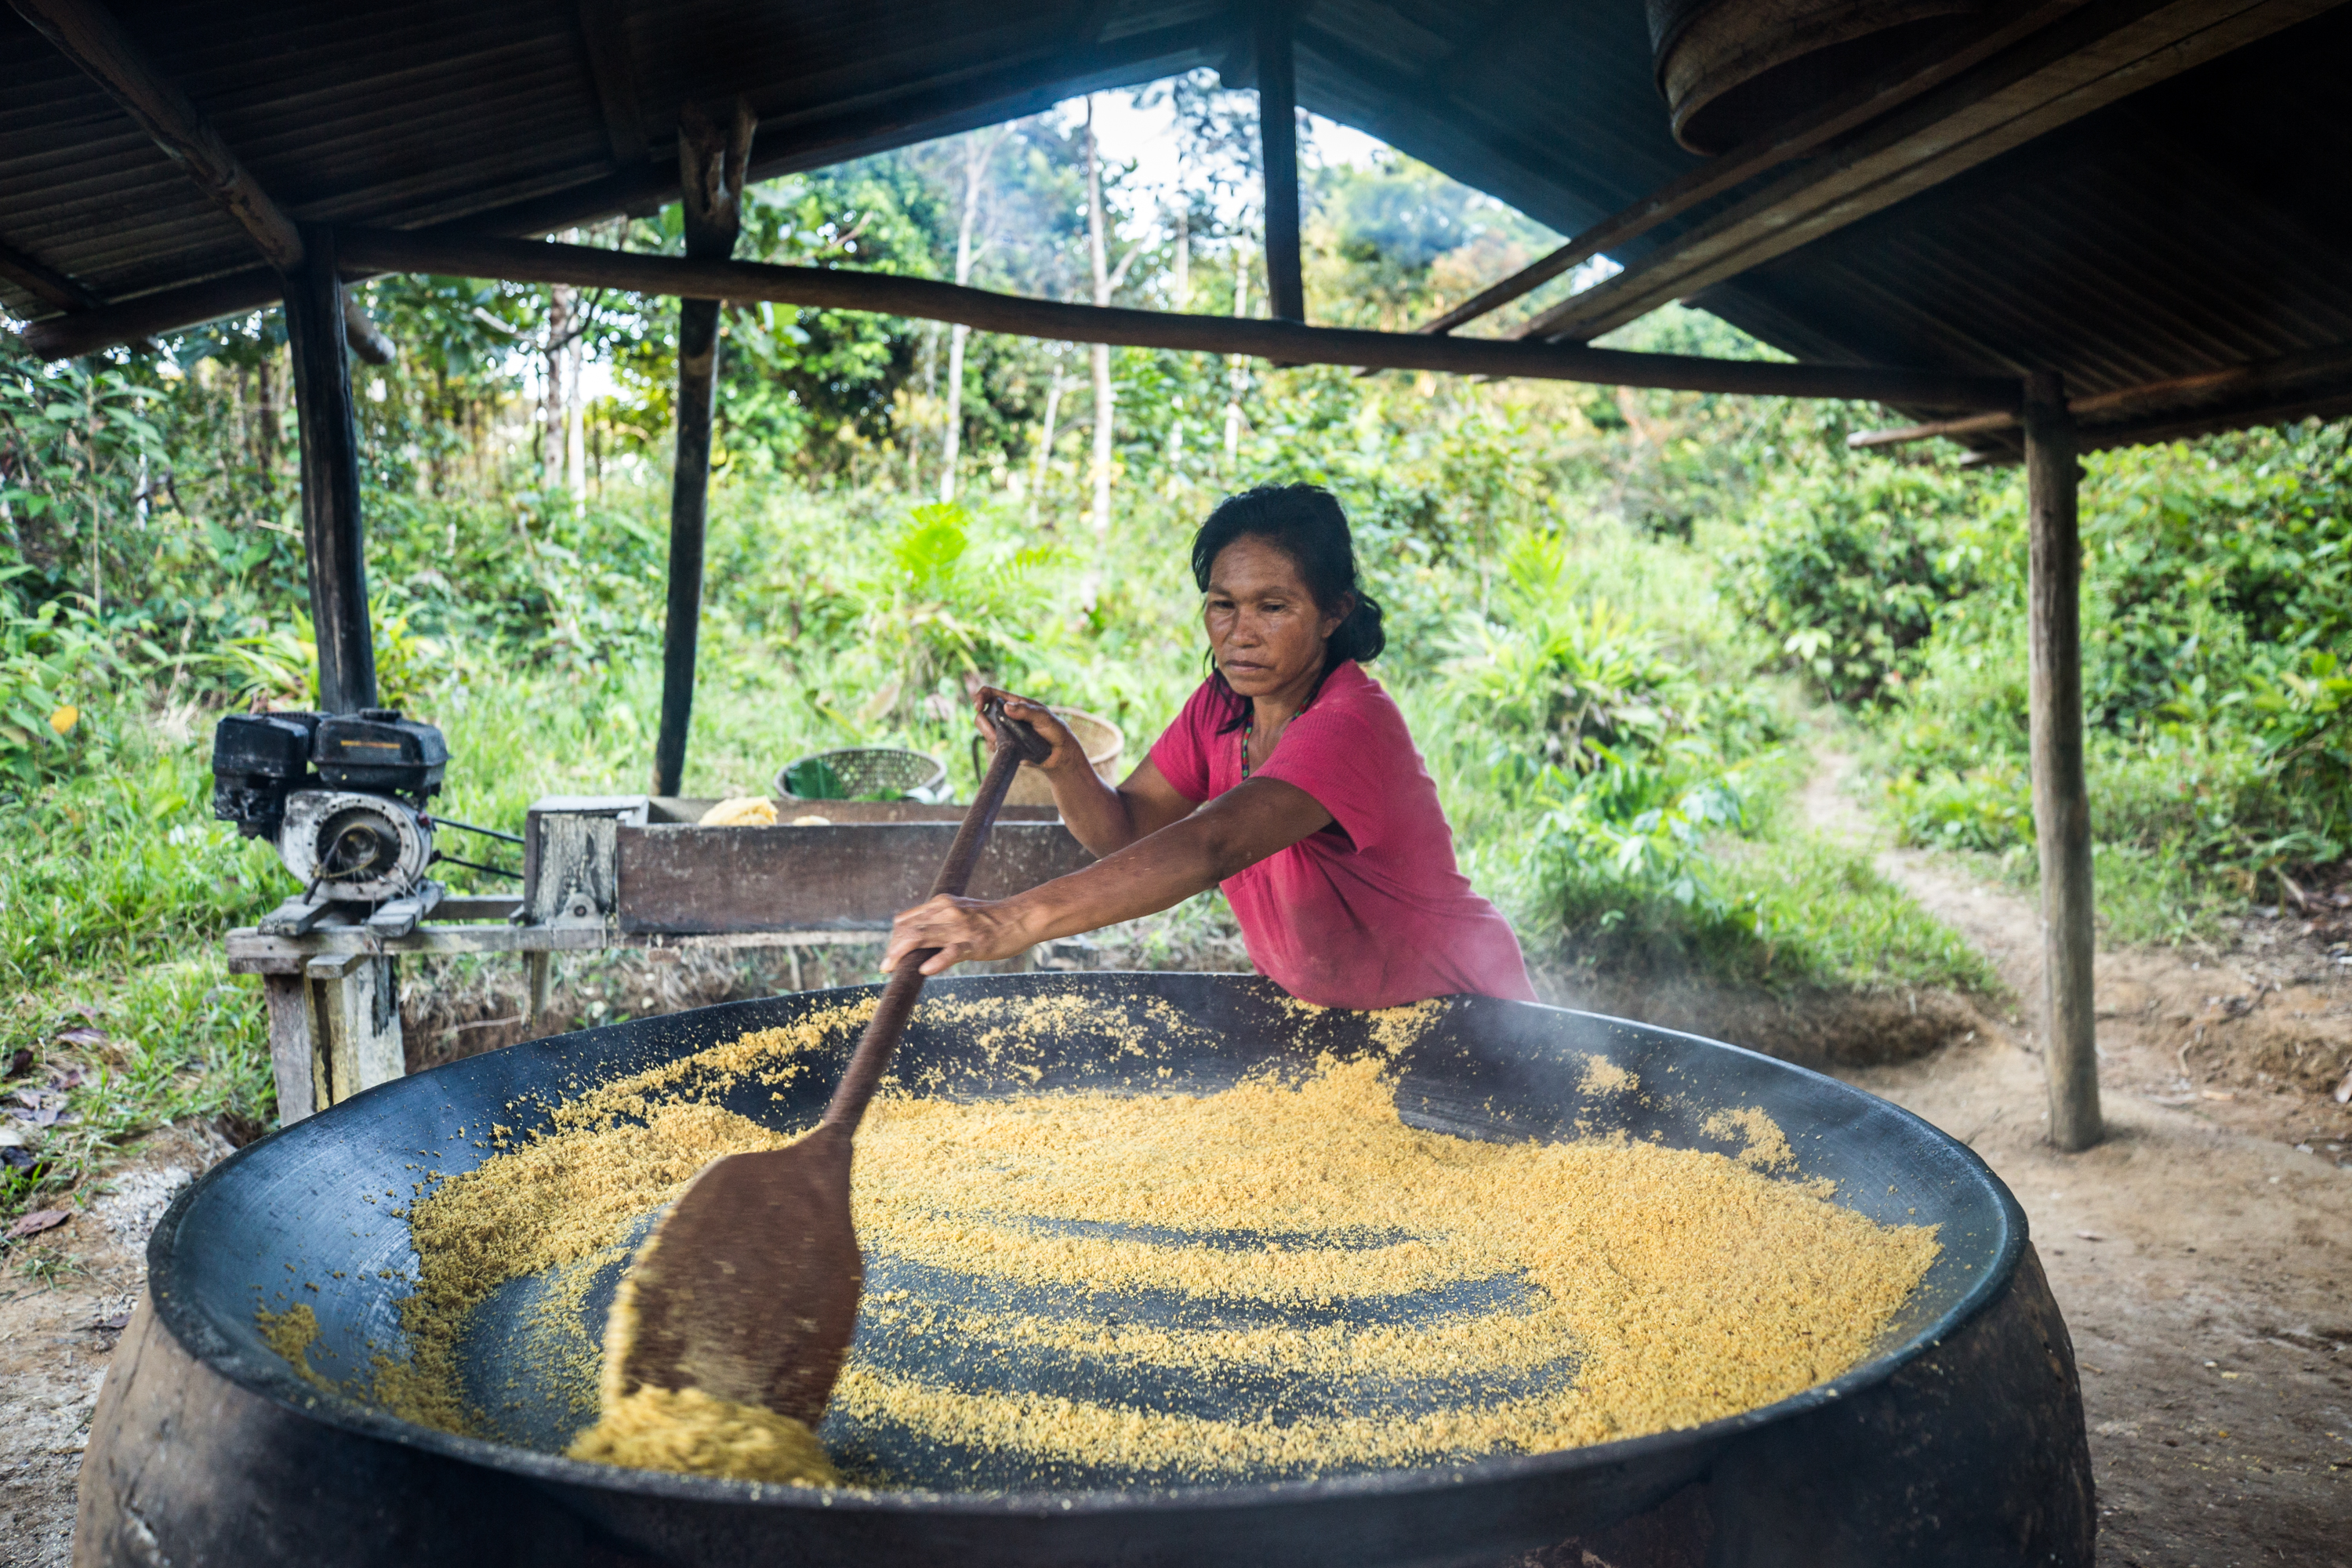 Cristina da Silva prepara a farinha de maniva|Fellipe Abreu/NatGeo